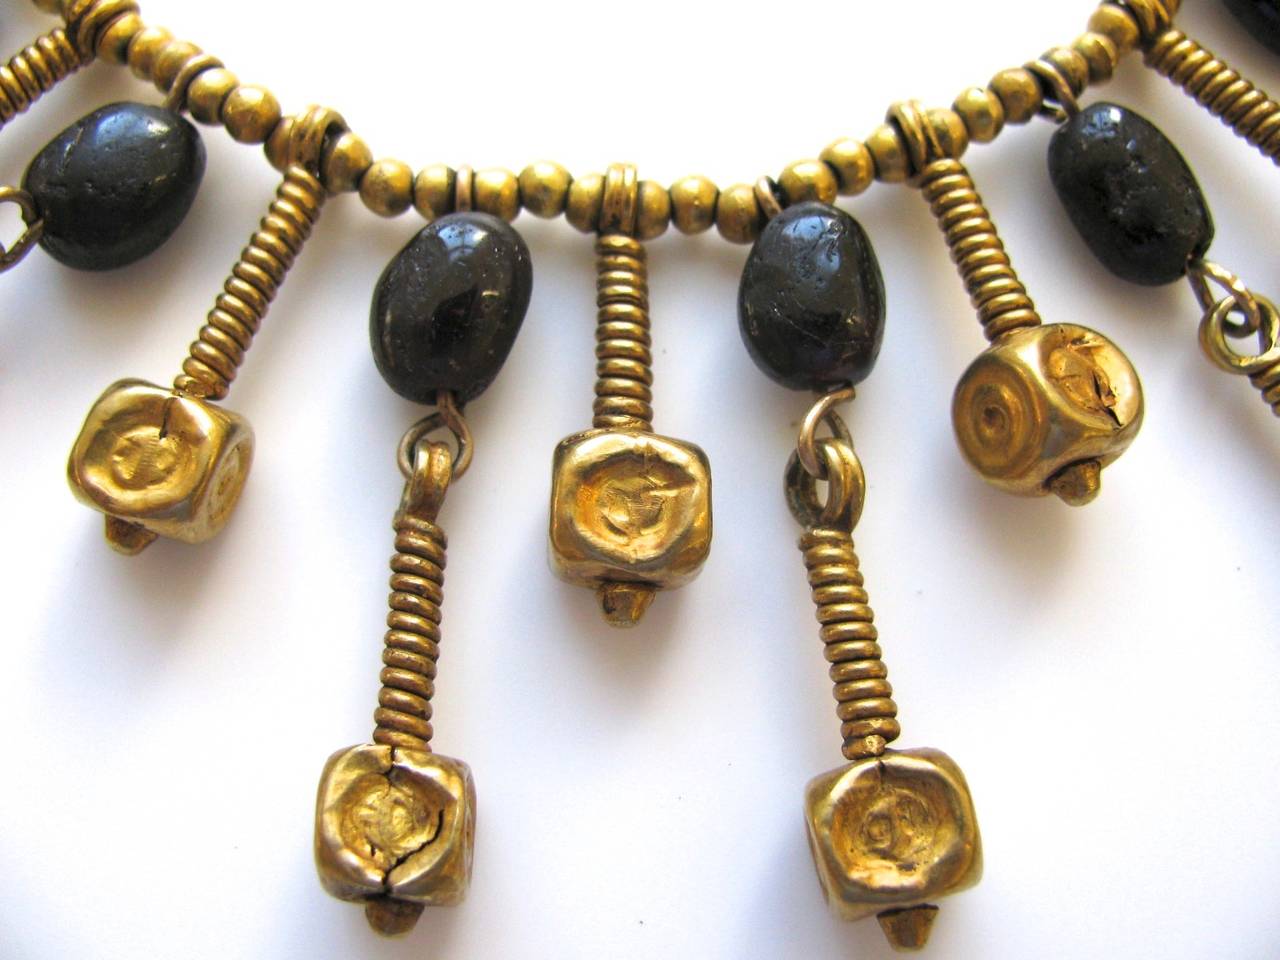 collier de perles anciennes des années 1970 par Patti Cadby Birch. Le collier à franges en or jaune 22k est composé de perles en or et grenat sur un fil métallique moderne enroulé avec des intercalaires en perles d'or. Birch, collectionneur,